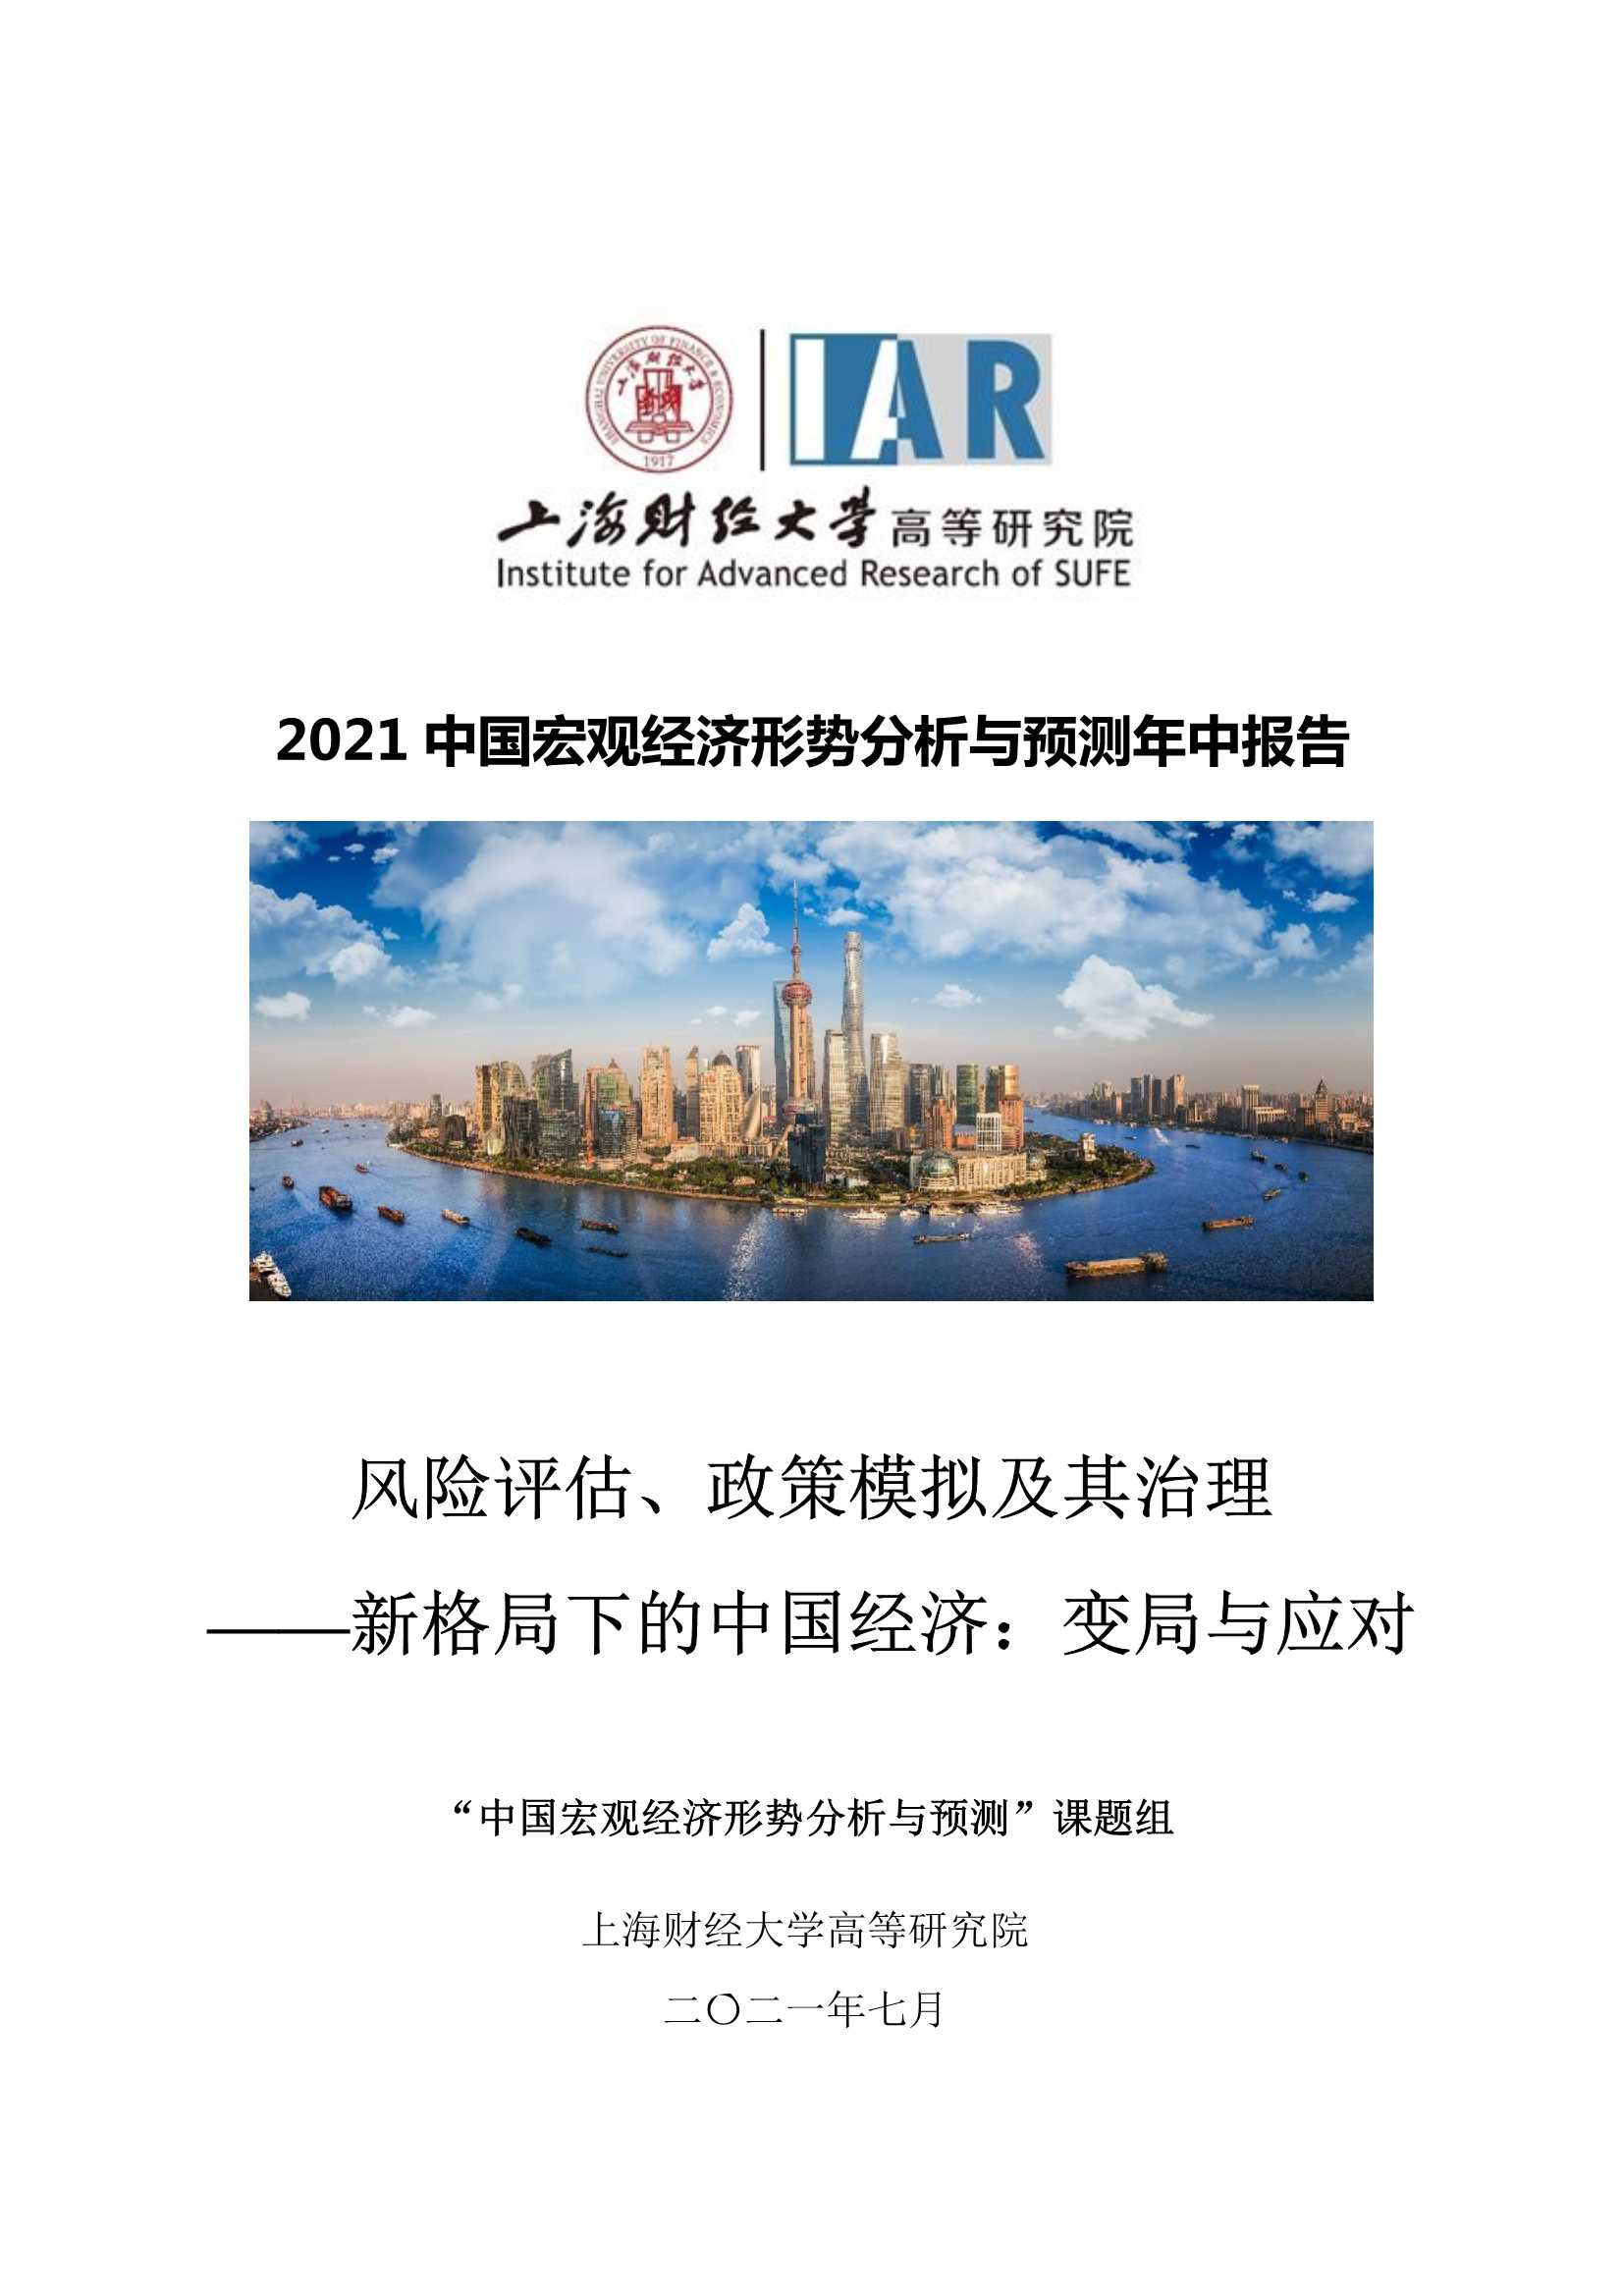 上海财经大学高等研究院-2021中国宏观经济形势分析与预测年中报告-2021.07-156页